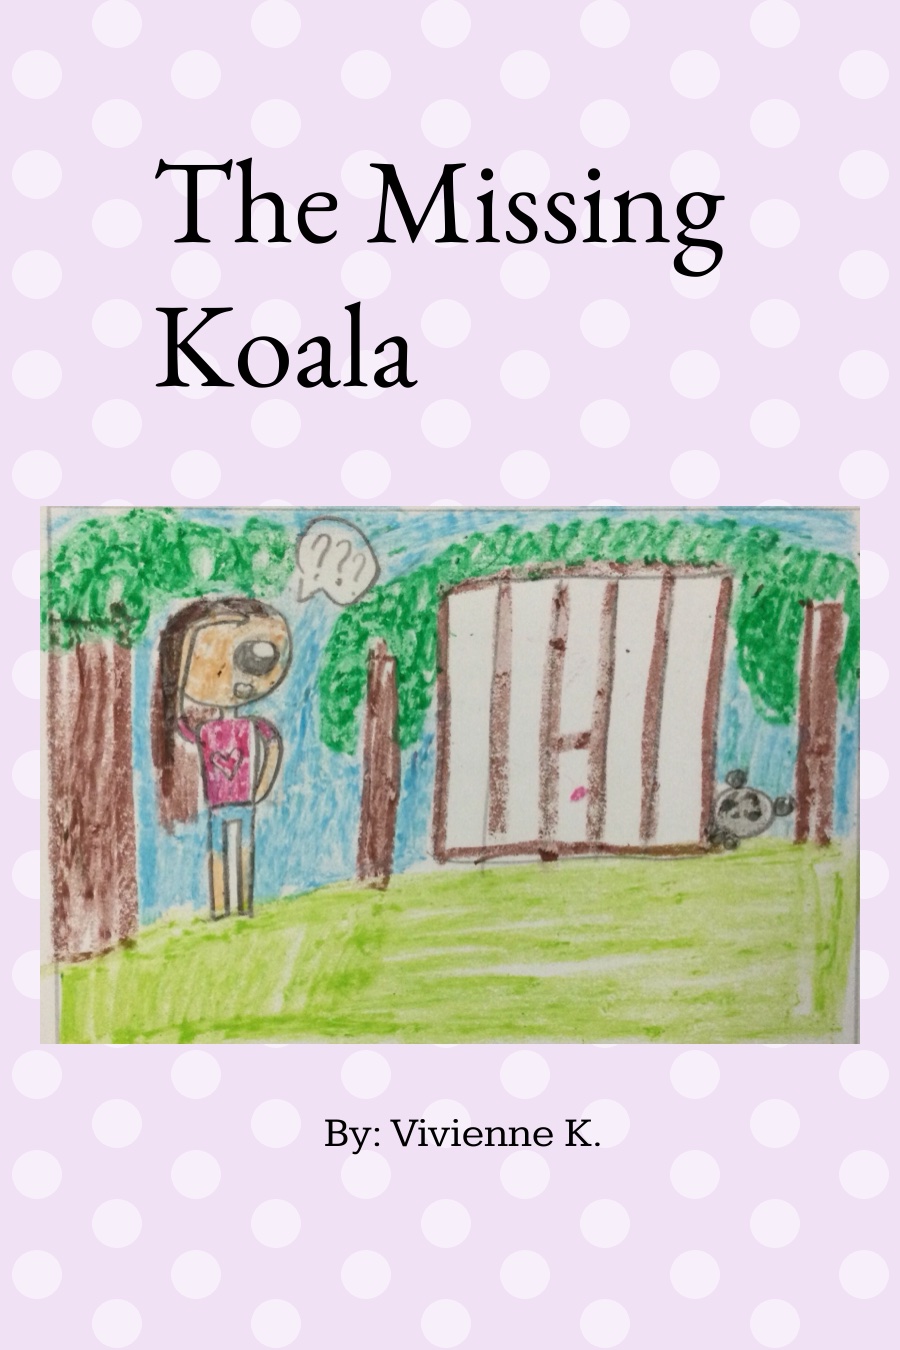 The Missing Koala by Vivienne K